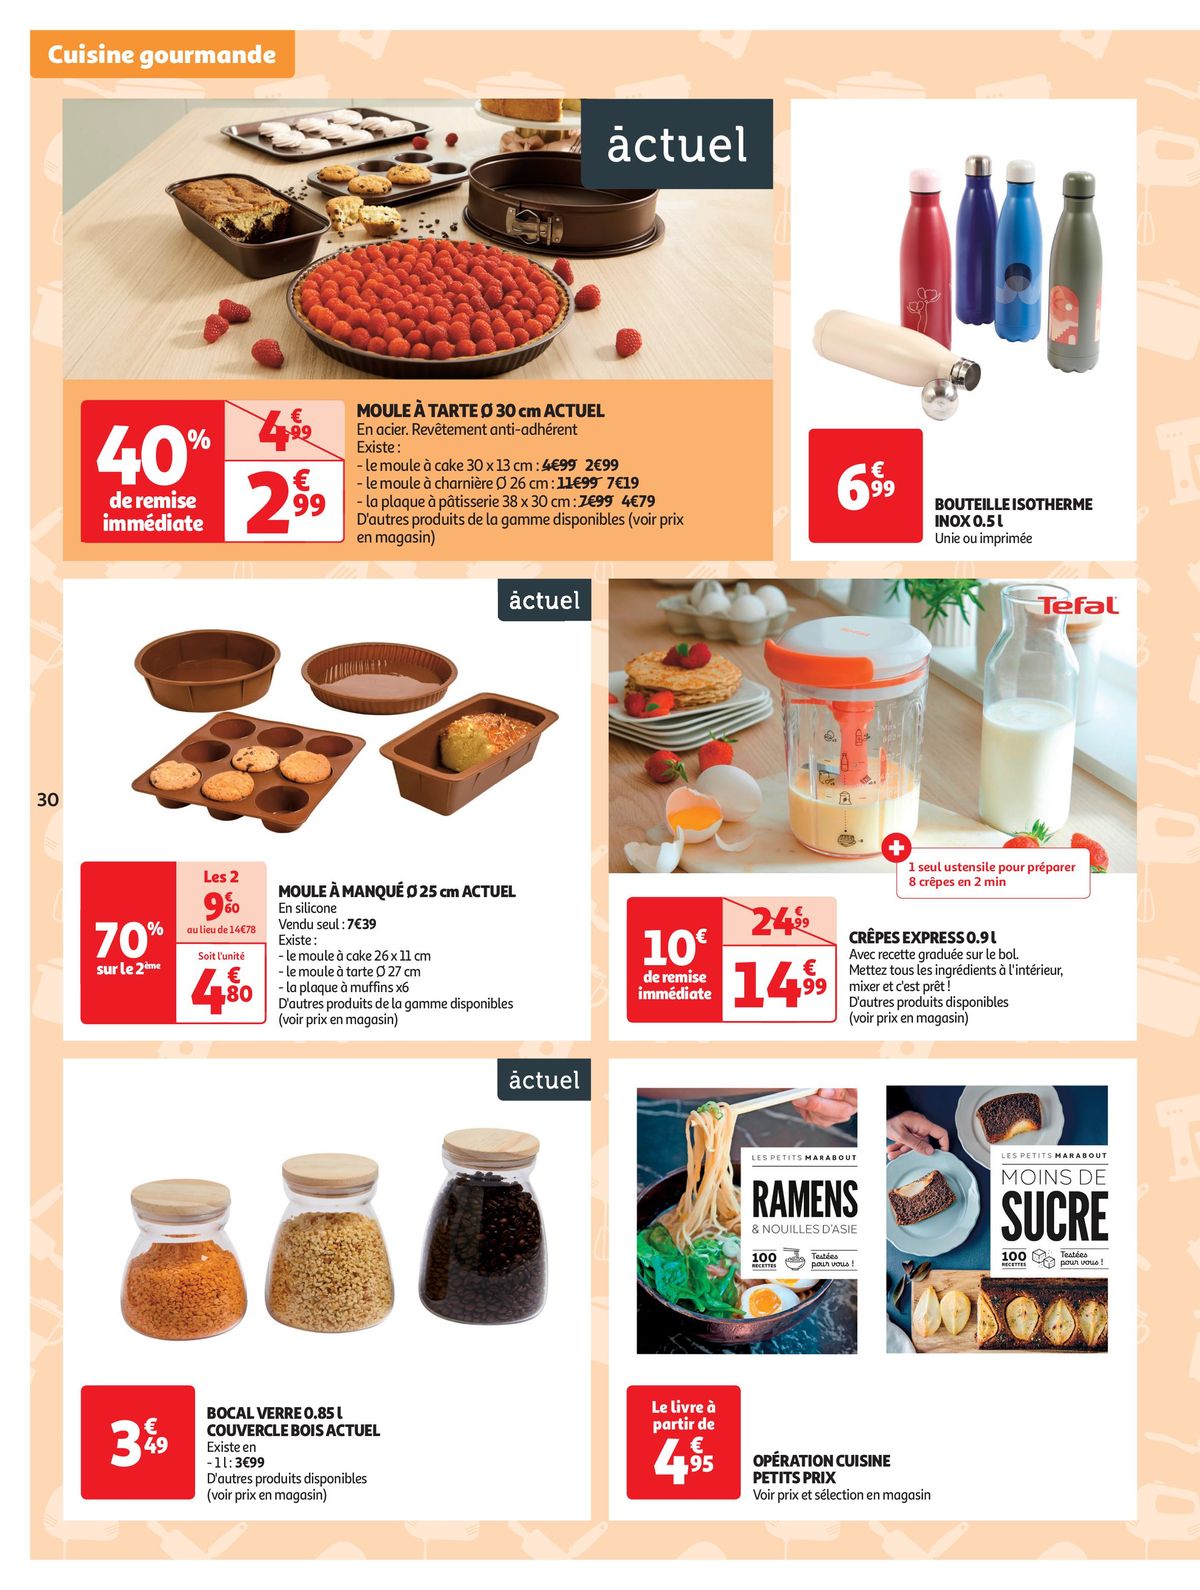 Catalogue Spécial Cuisine Gourmane dans votre supermarché, page 00030